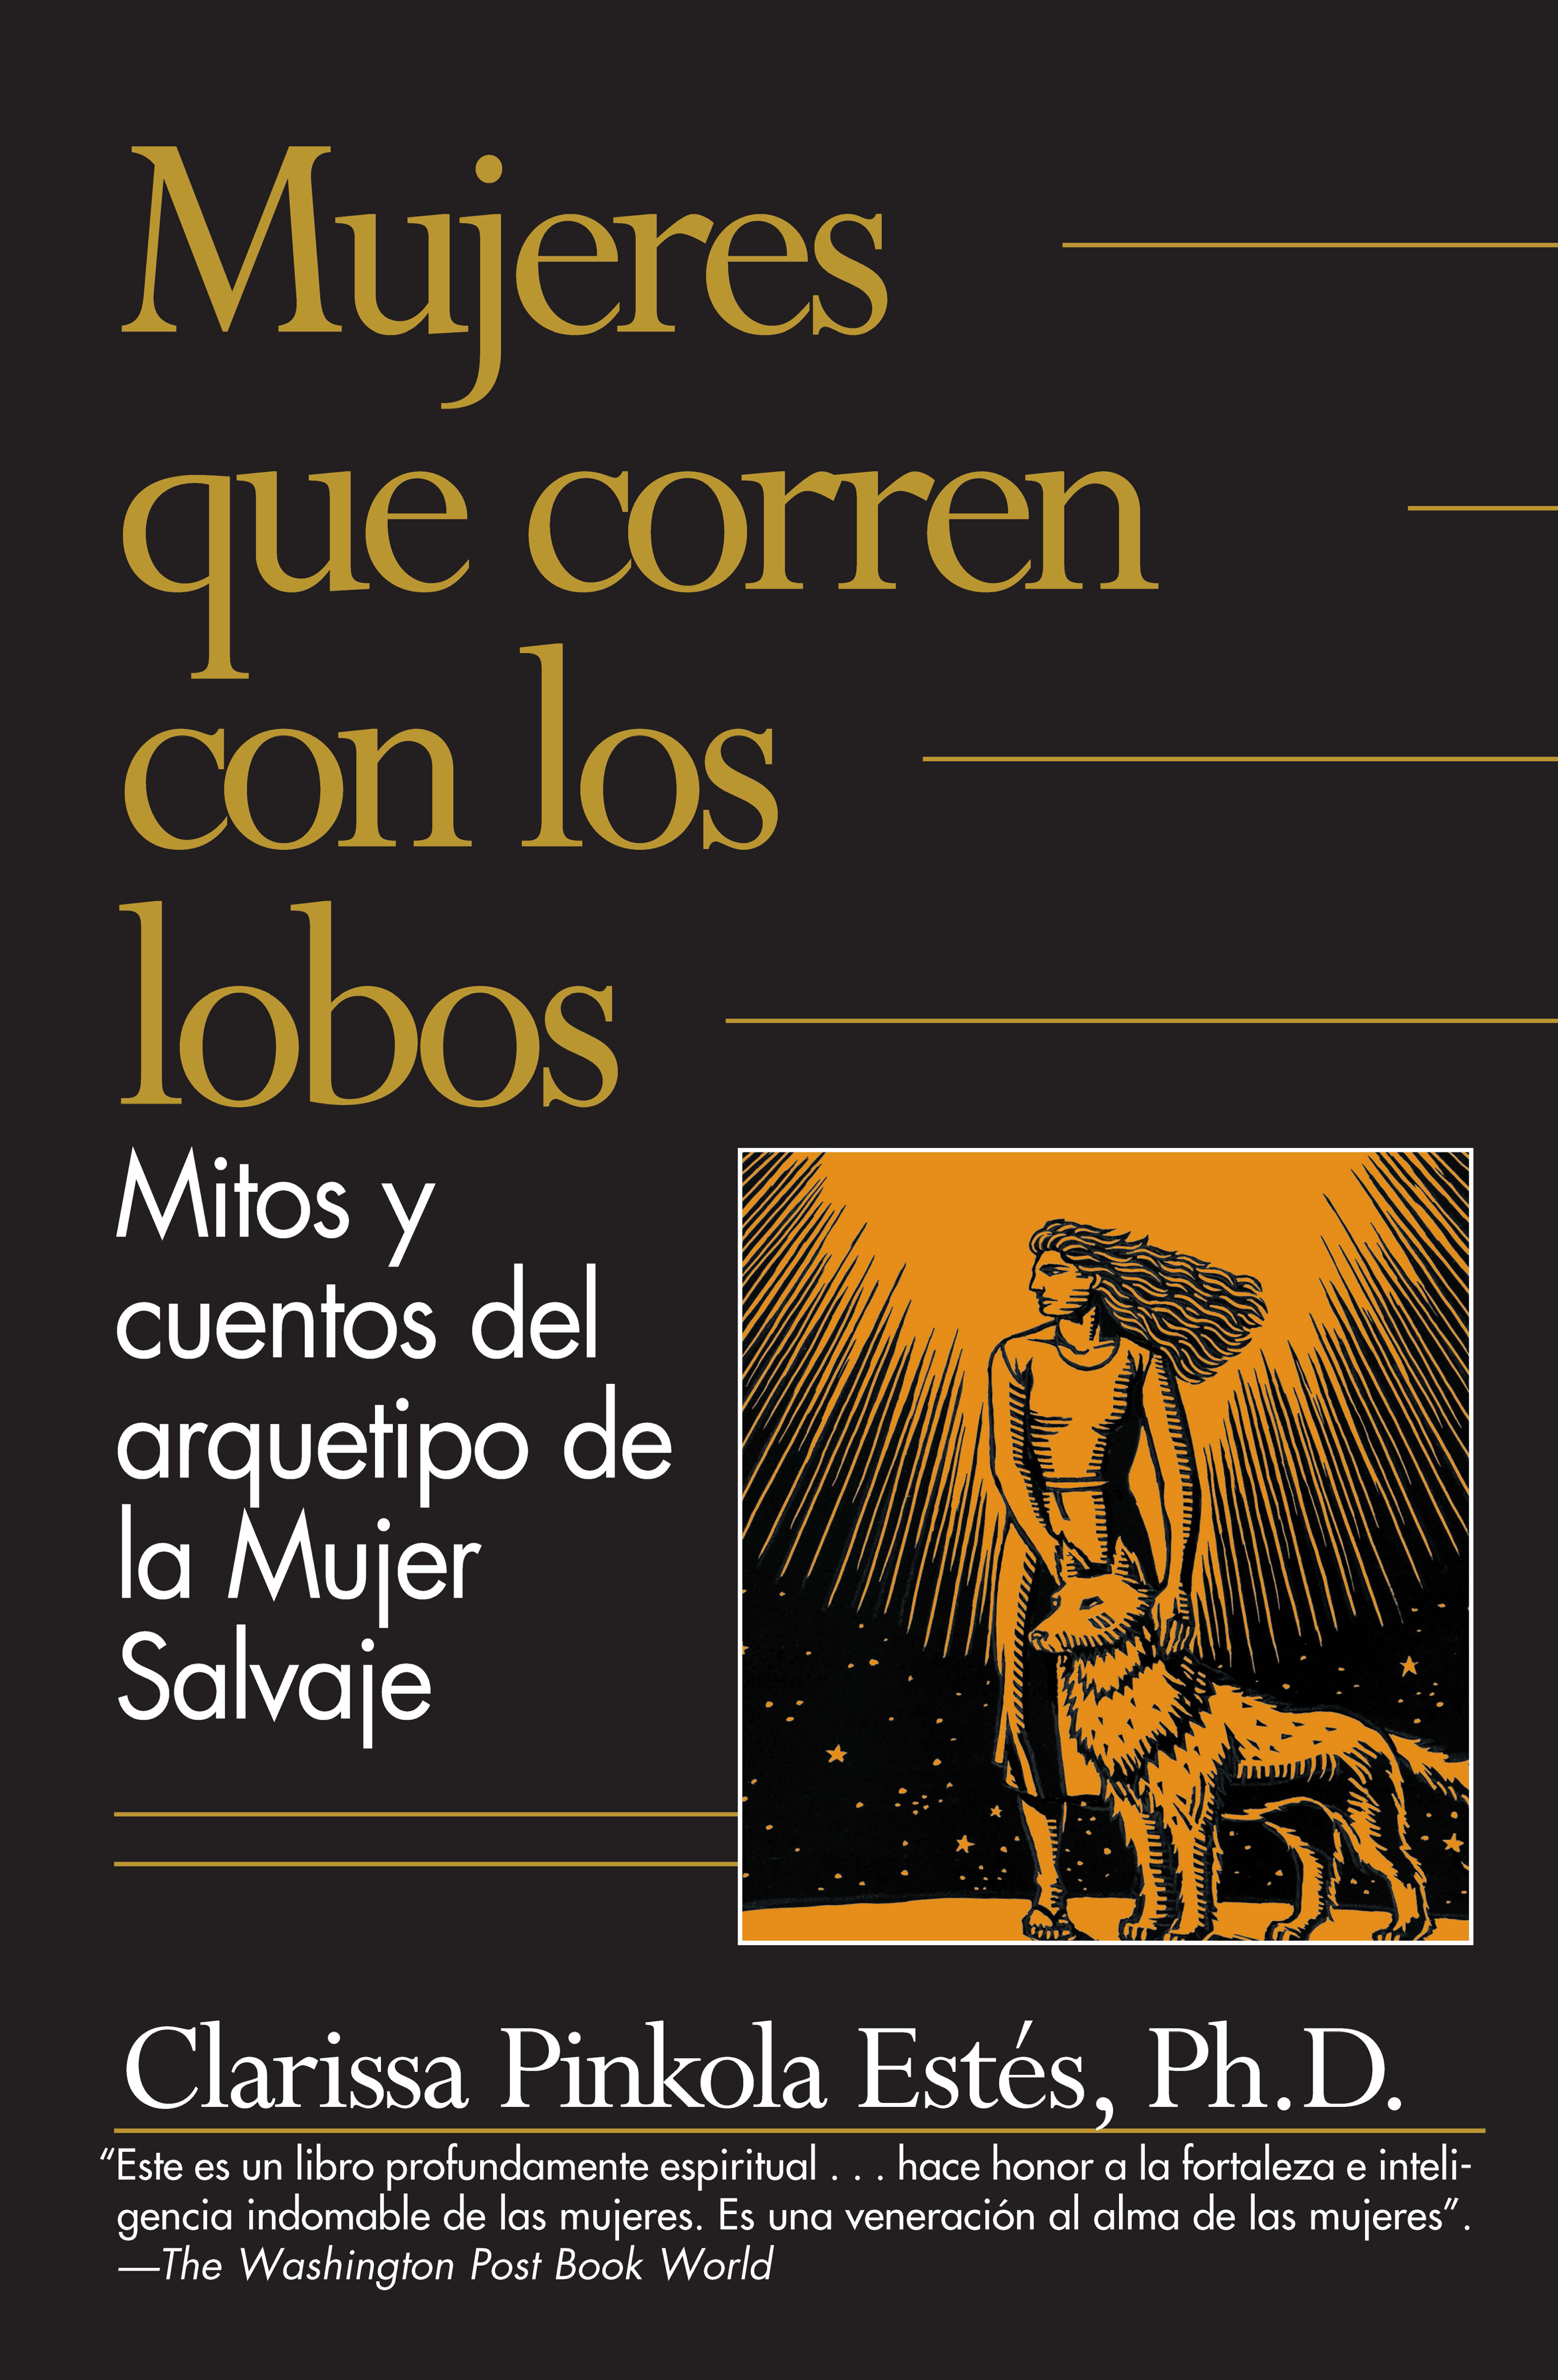 Mujeres Que Corren Con Los Lobos by Clarissa Pinkola Estes | Firestorm Books